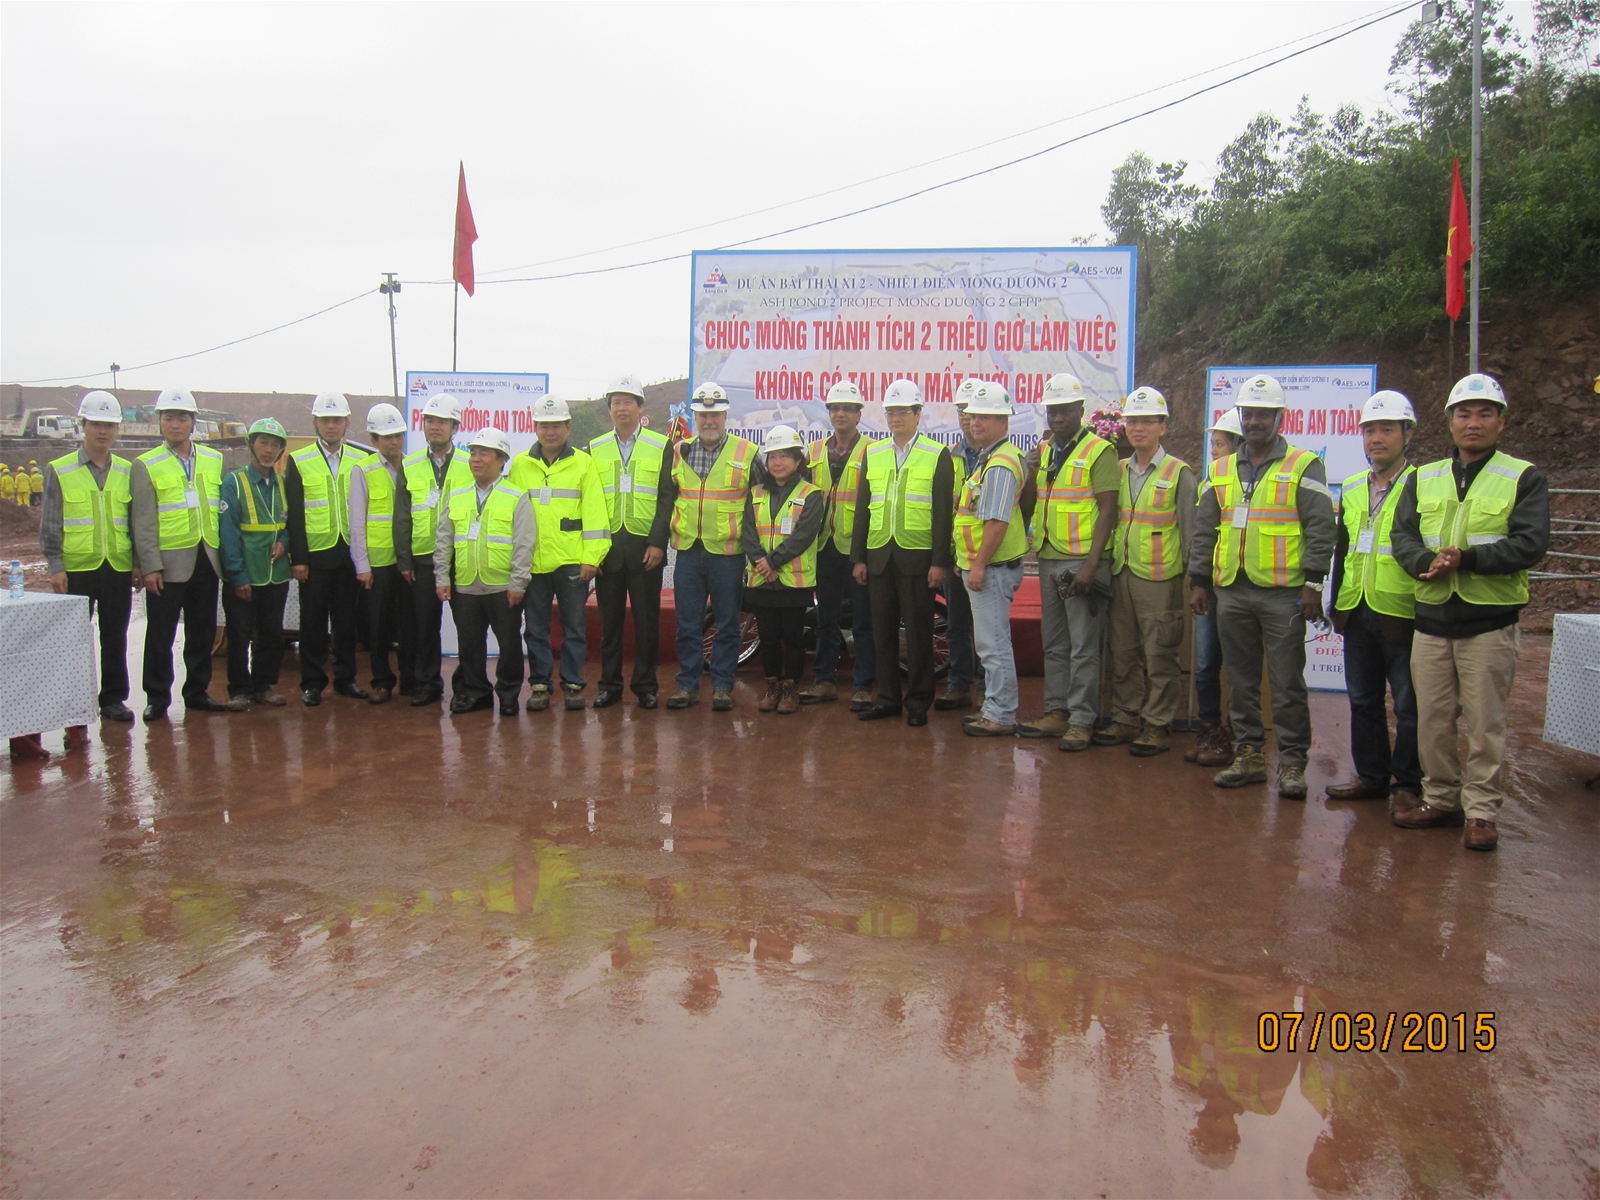 Công ty cổ phần Sông Đà 9: Công trường Bãi thải xỉ số 2 – Dự án nhiệt điện Mông Dương 2 đạt thành tích 2 triệu giờ làm việc không có tai nạn lao động